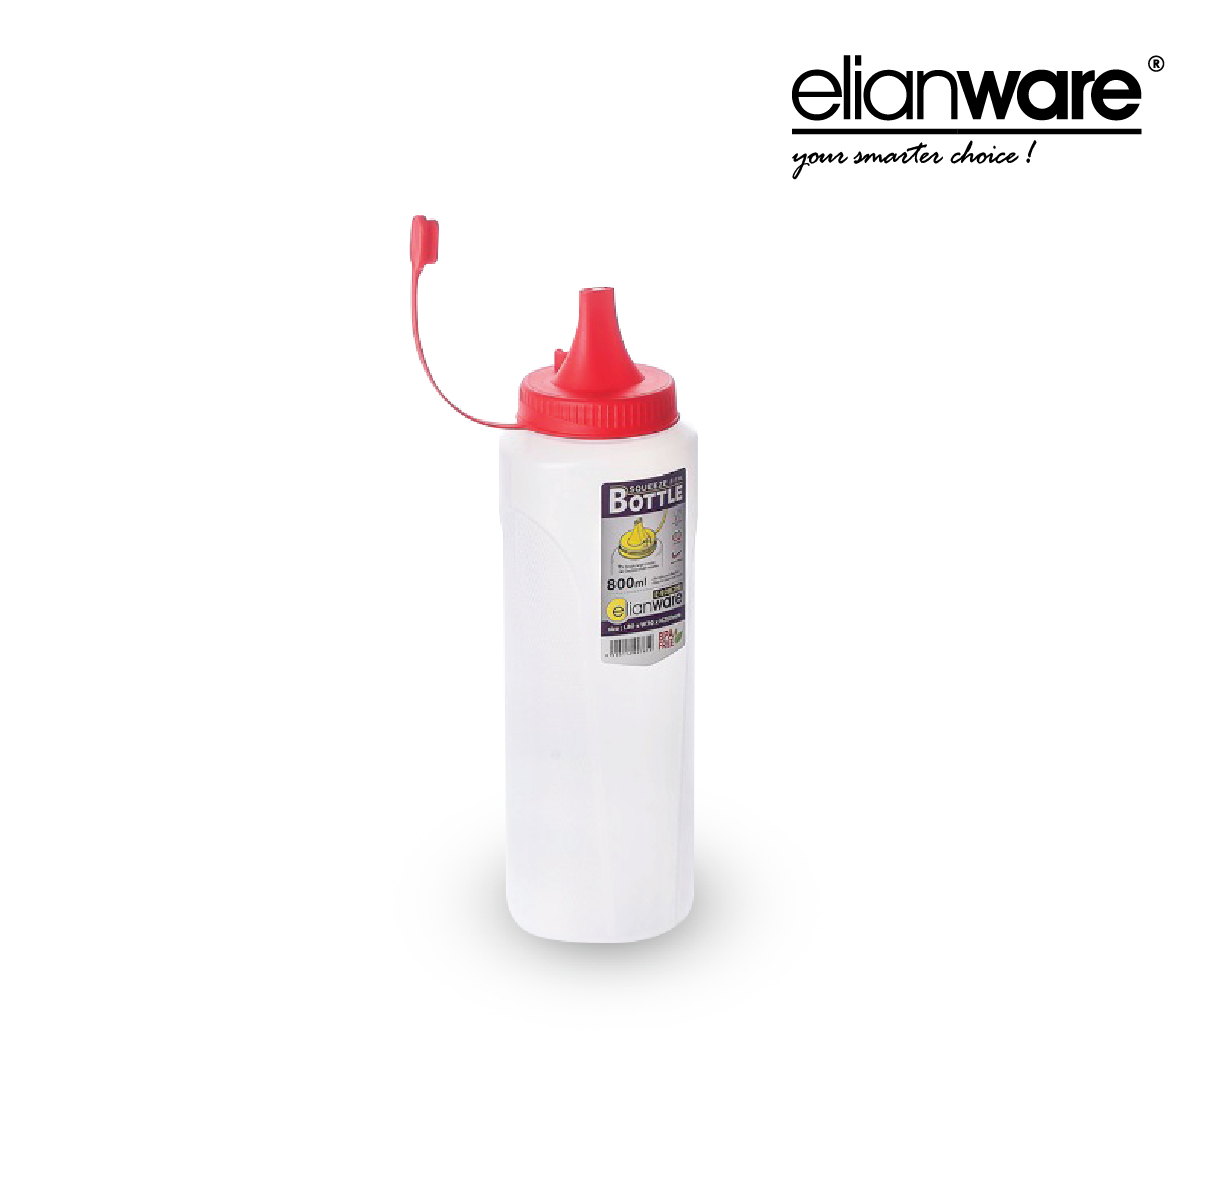 ELIANWARE Sauce Bottle (800ML), Double Hole / 2 lubang